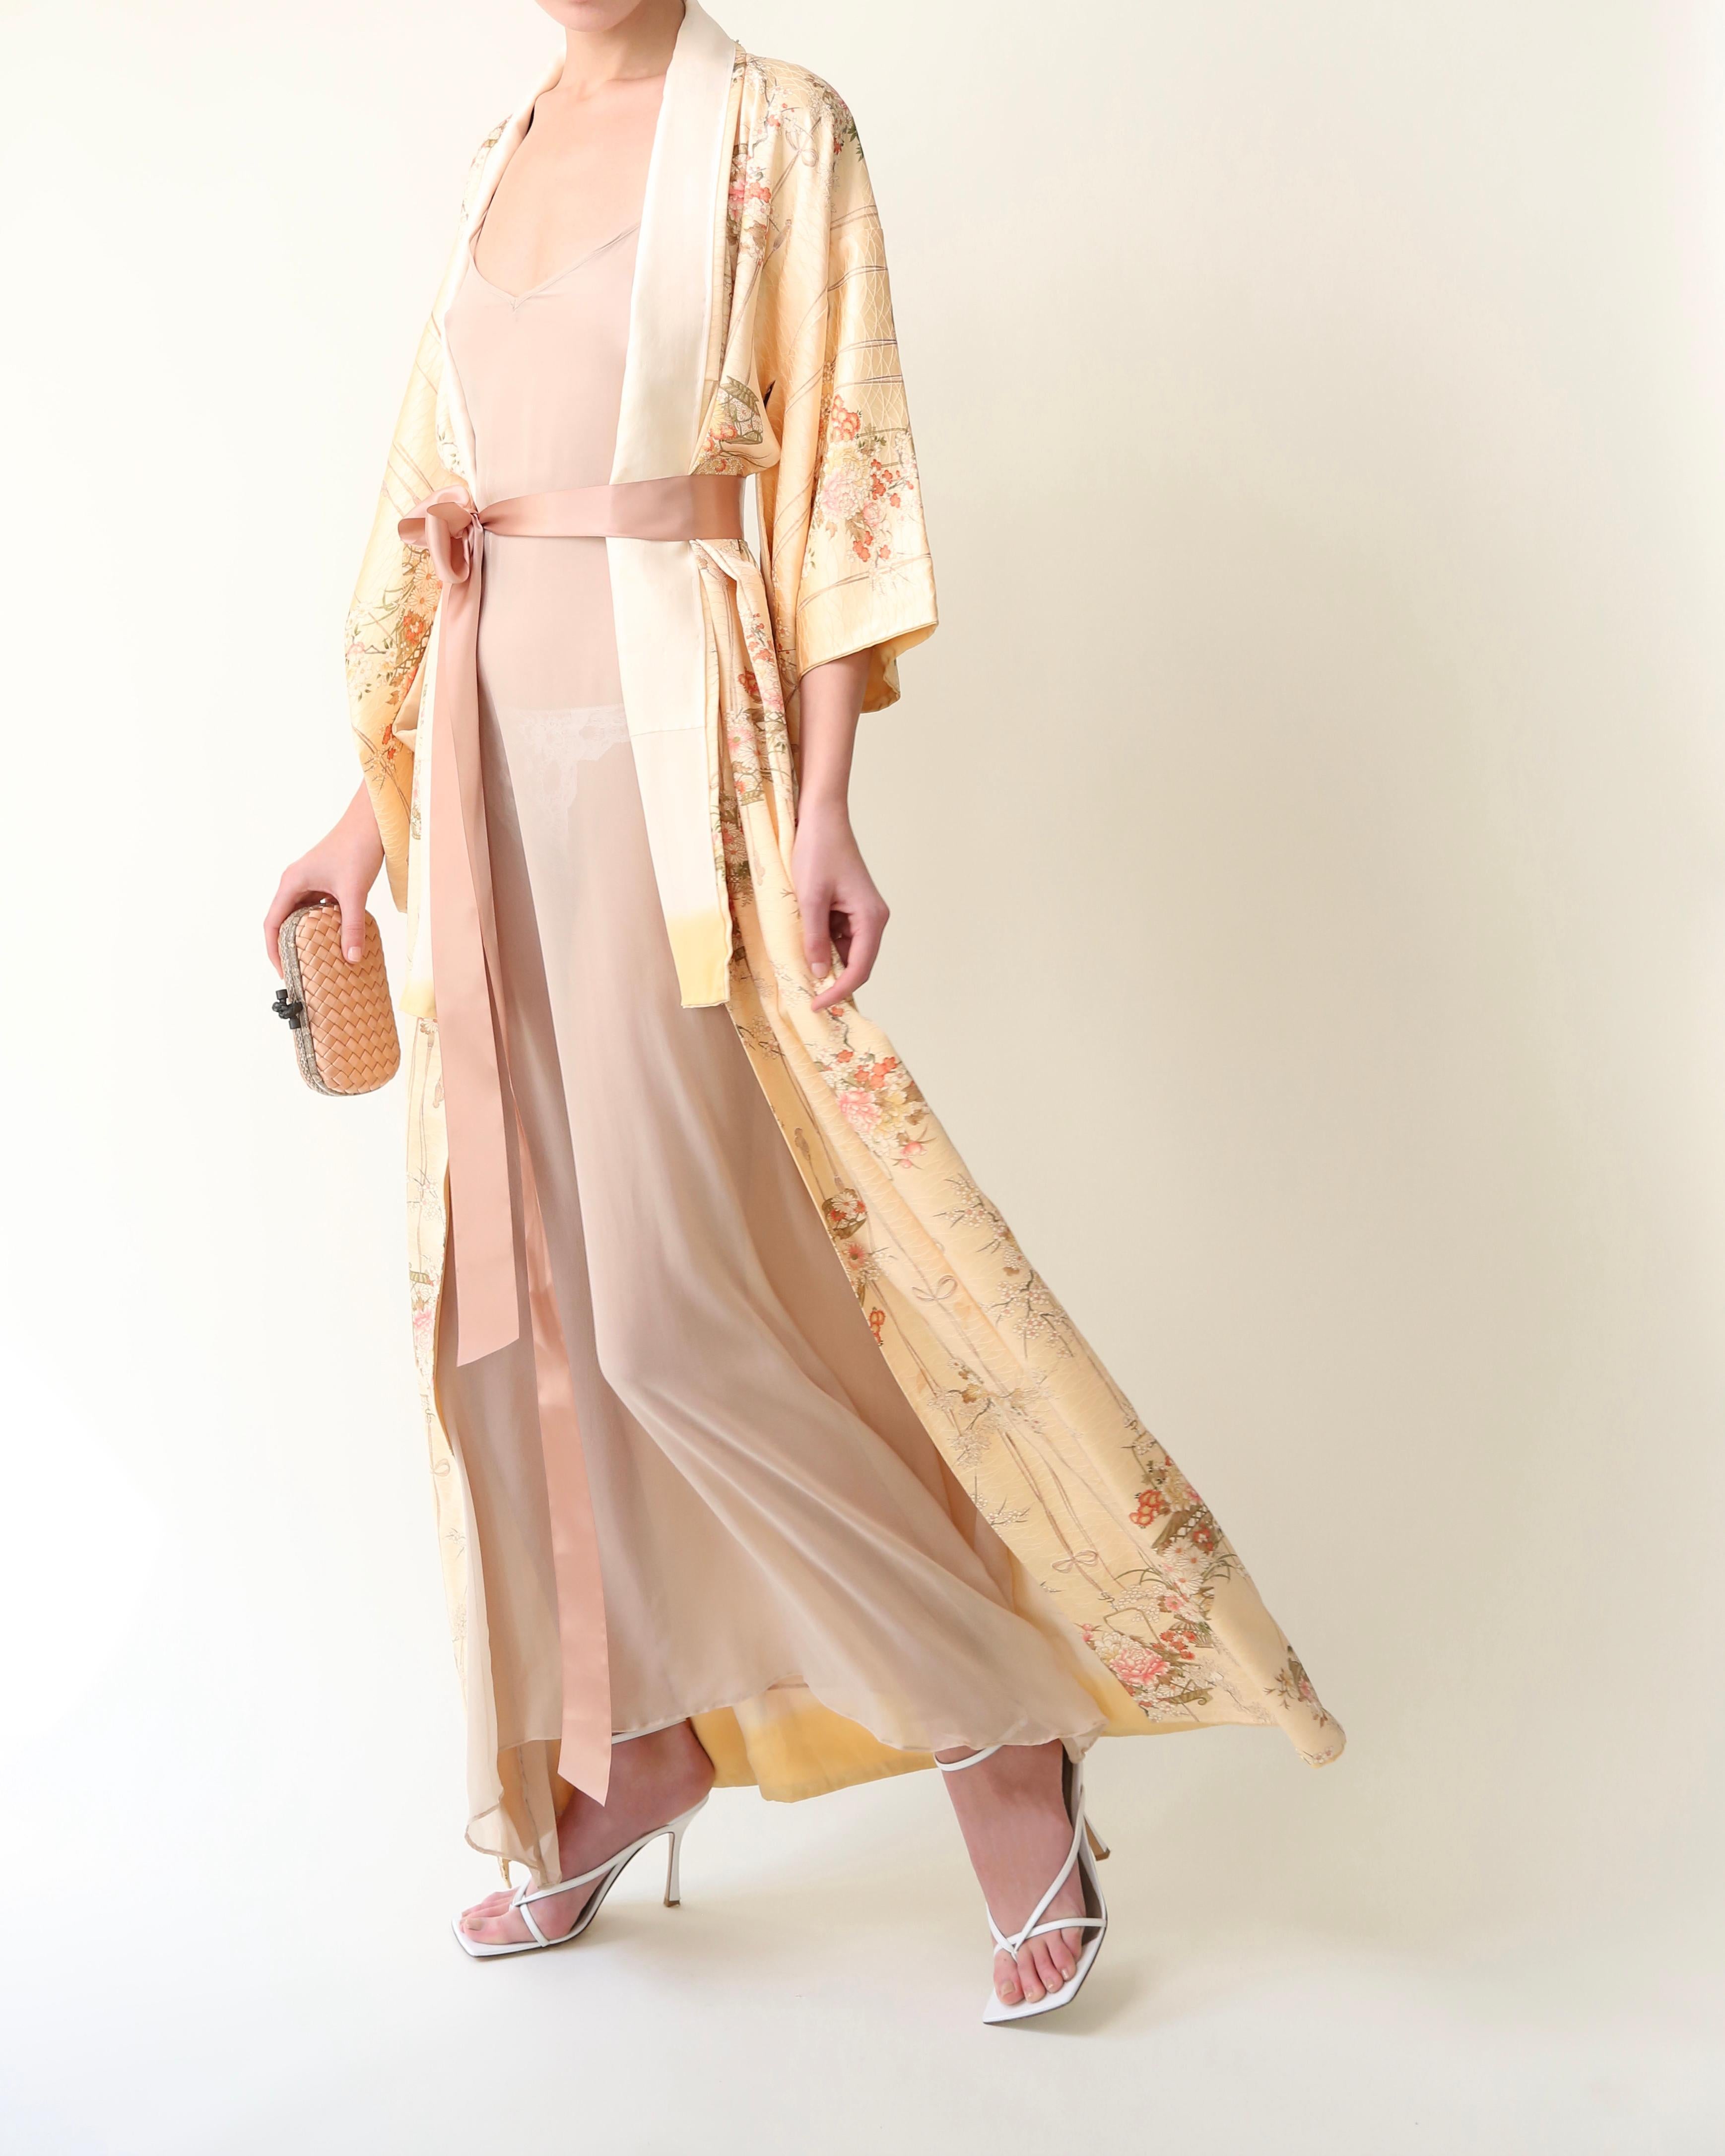 Kimono japonais vintage en 100% soieu2028
Fabriqué à la main au Japon 
Longueur du sol
Pêche pâle avec impression colorée
Il est accompagné d'un ruban de soie rose blush qui vous permet de le porter ouvert ou fermé.u2028

EXPÉDITION GRATUITE DANS LE